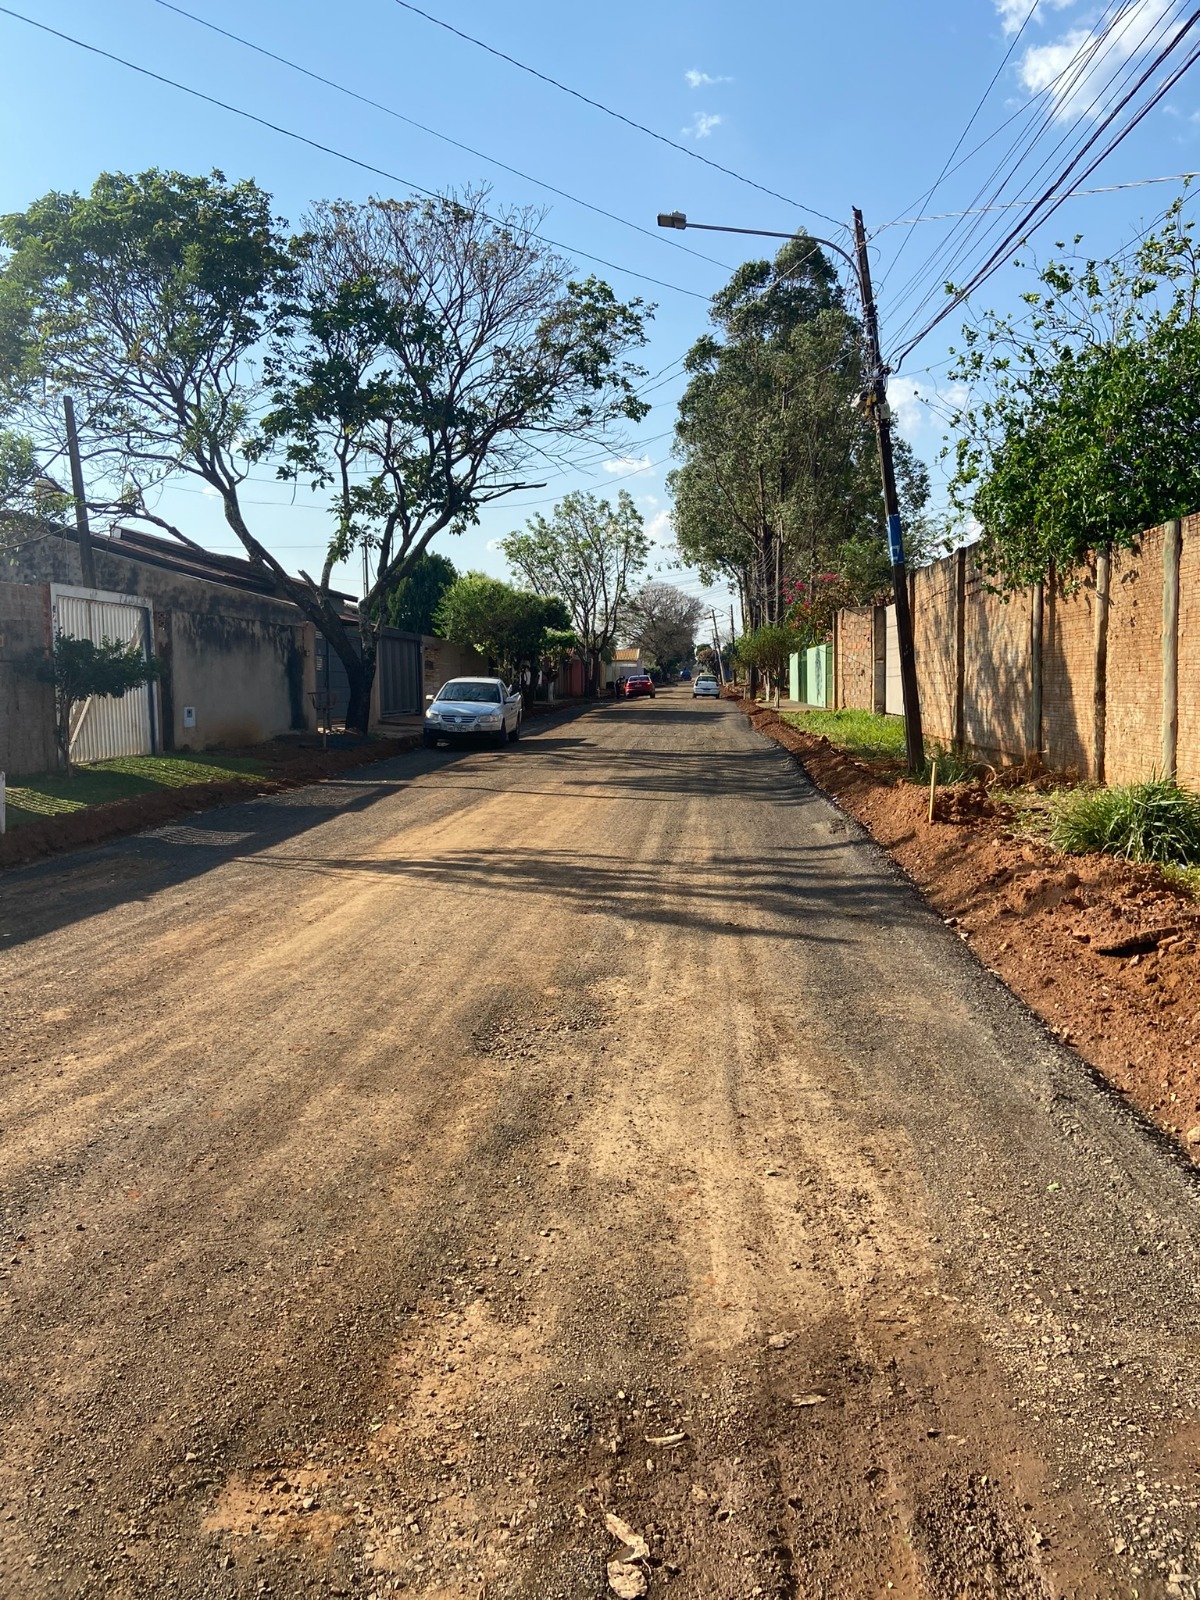 Executivo fará estudo para que ruas do Oliveira não fiquem de fora das obras de asfalto, diz Betinho